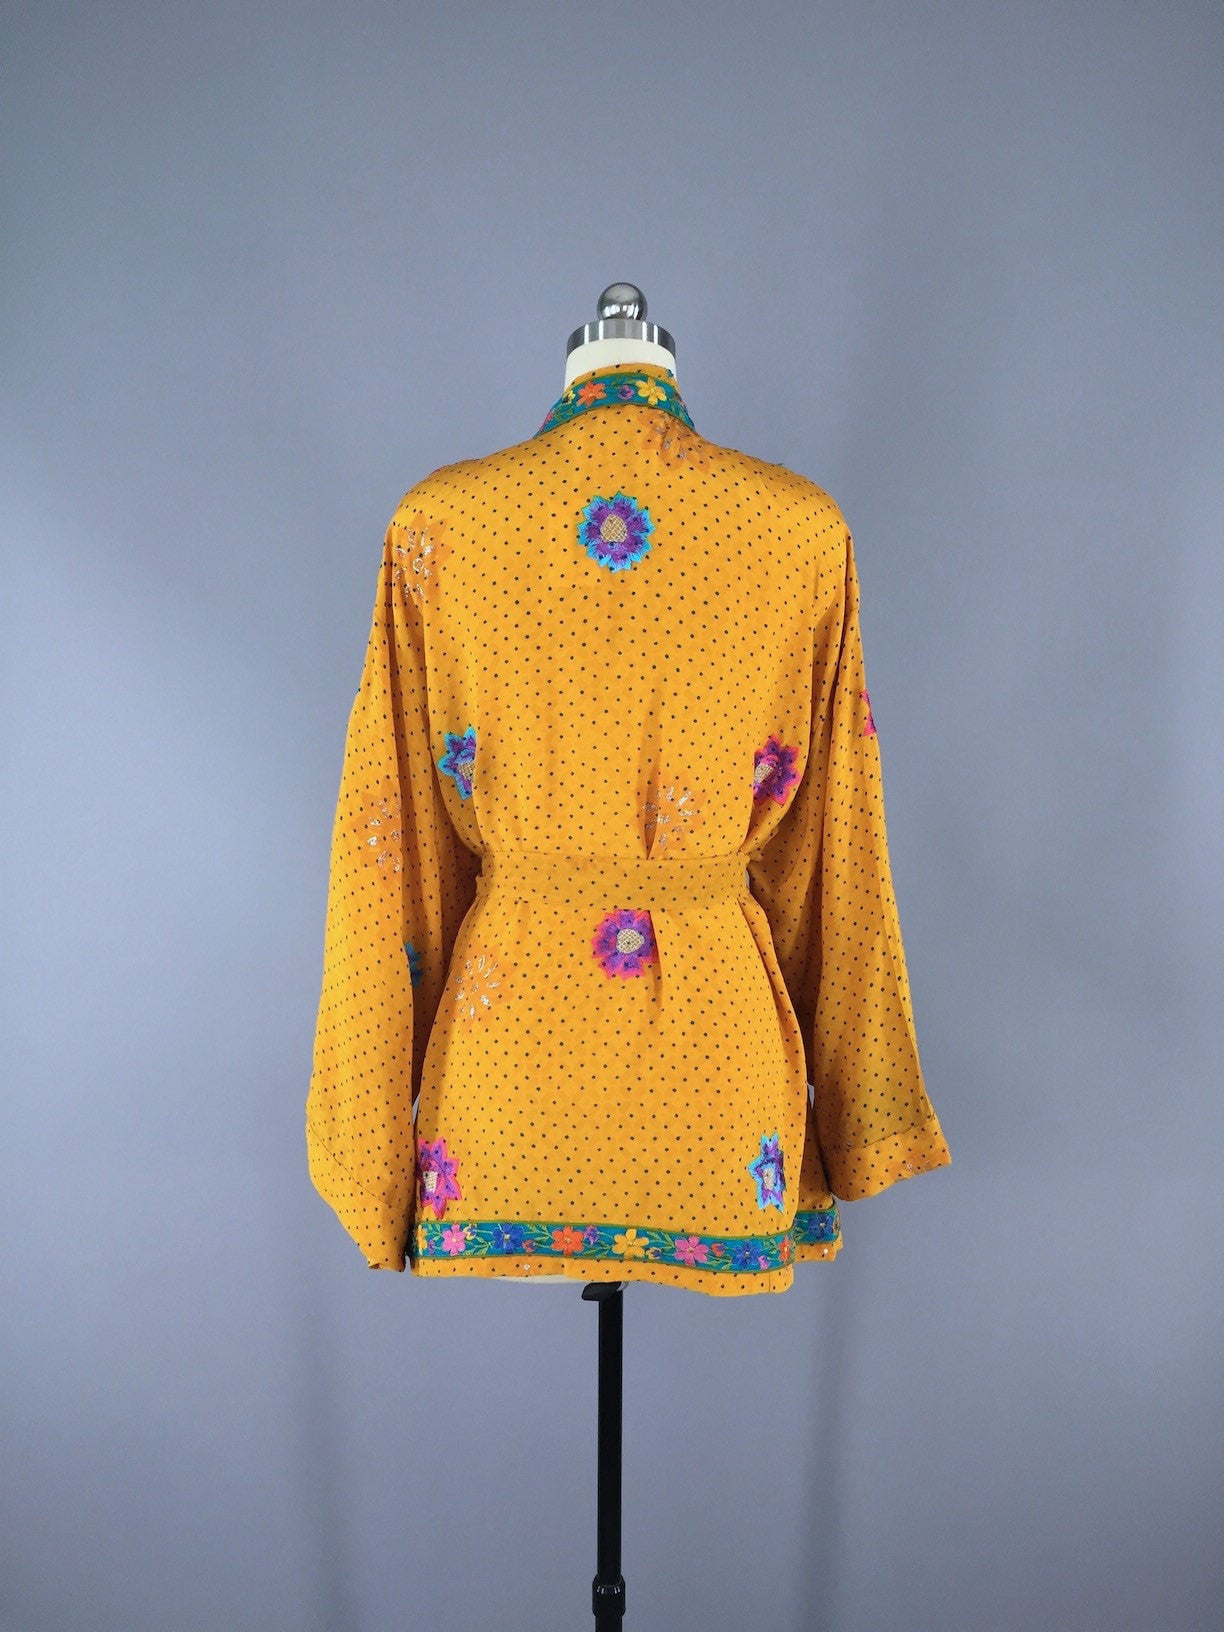 Silk Kimono Cardigan / Vintage Indian Sari / Yellow Floral Embroidery - ThisBlueBird